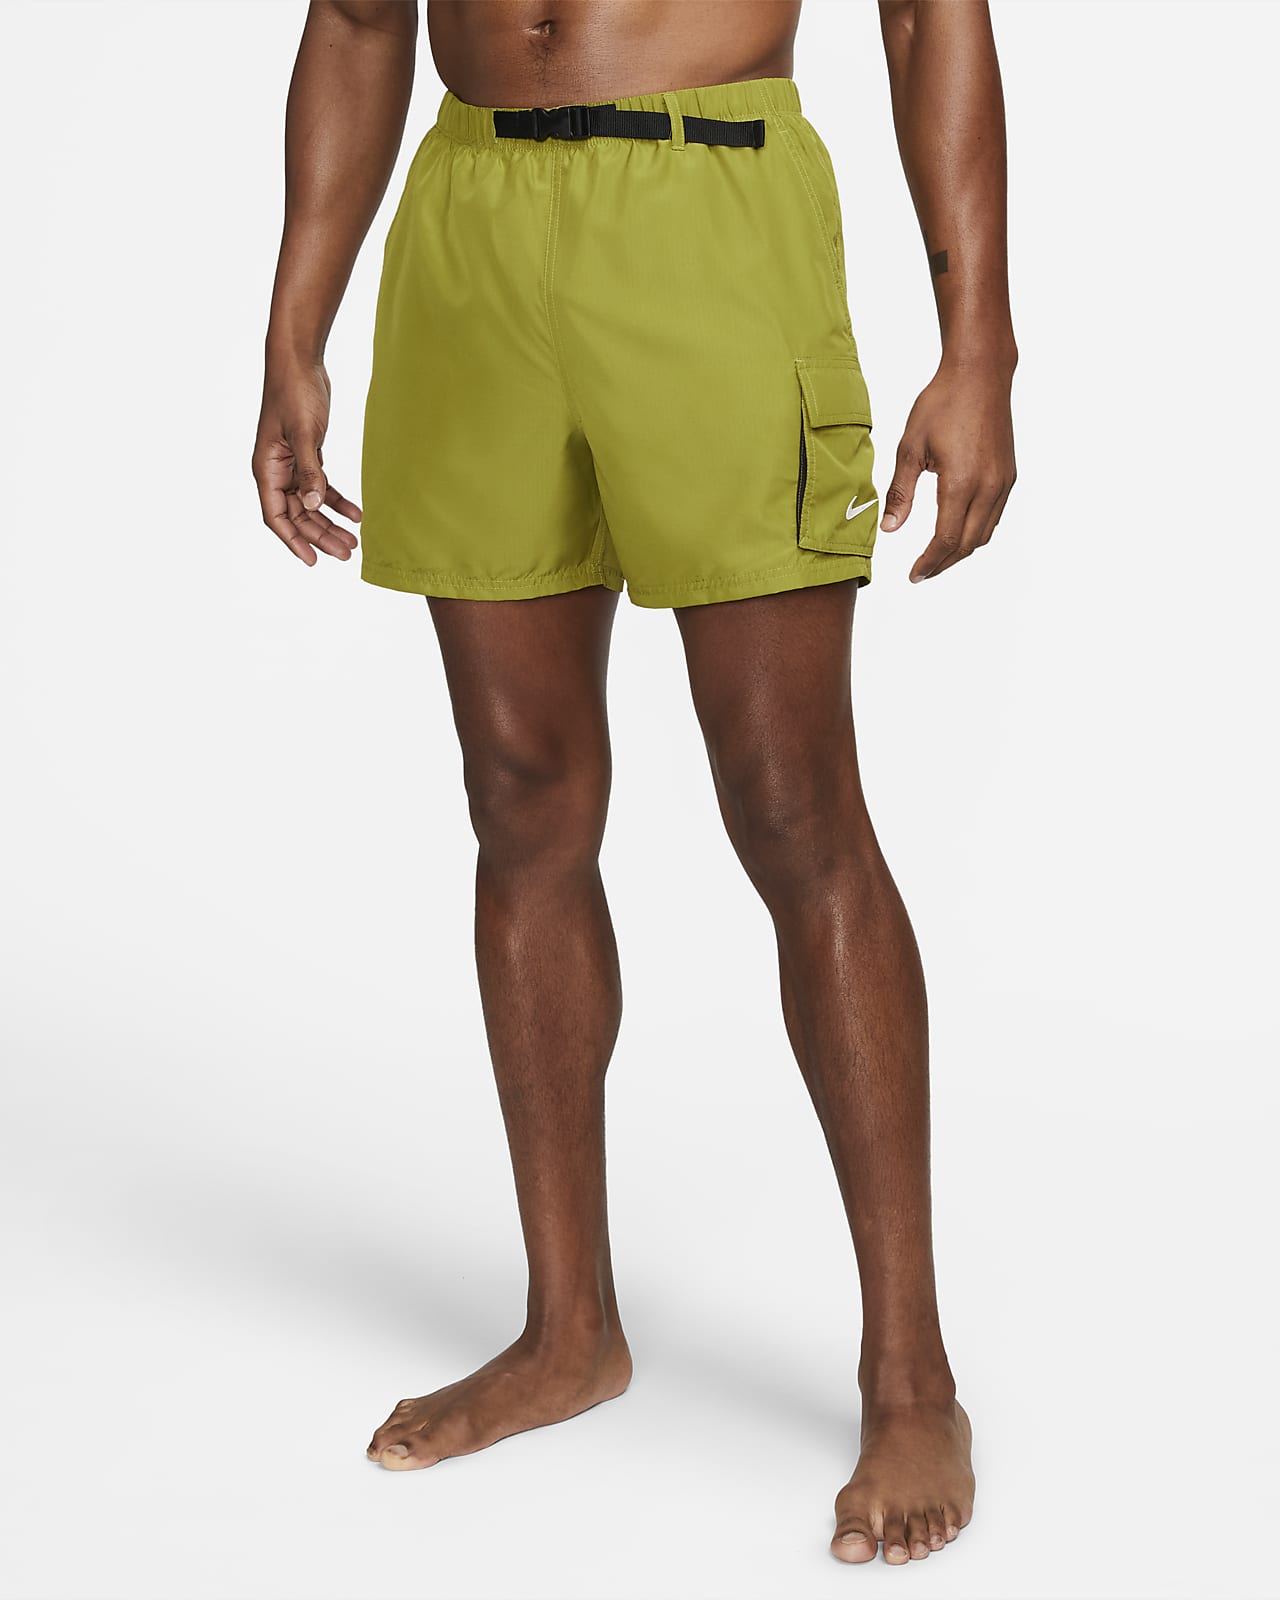 Packbara badshorts Nike med bälte 13 cm för män